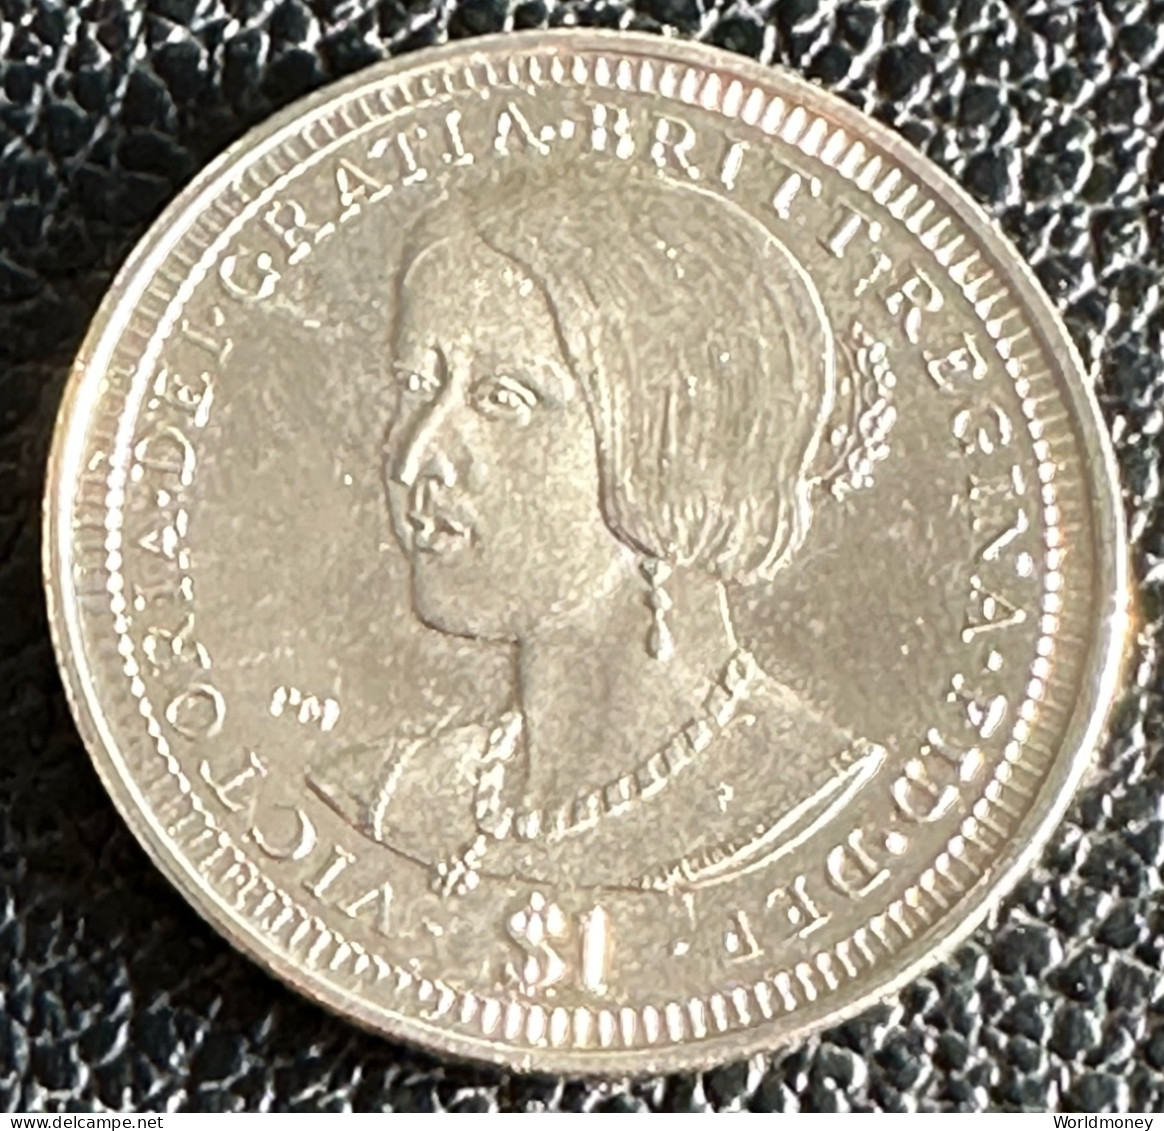 British Virgin Islands 1 Dollars 2006 "Queen Victoria" - British Virgin Islands